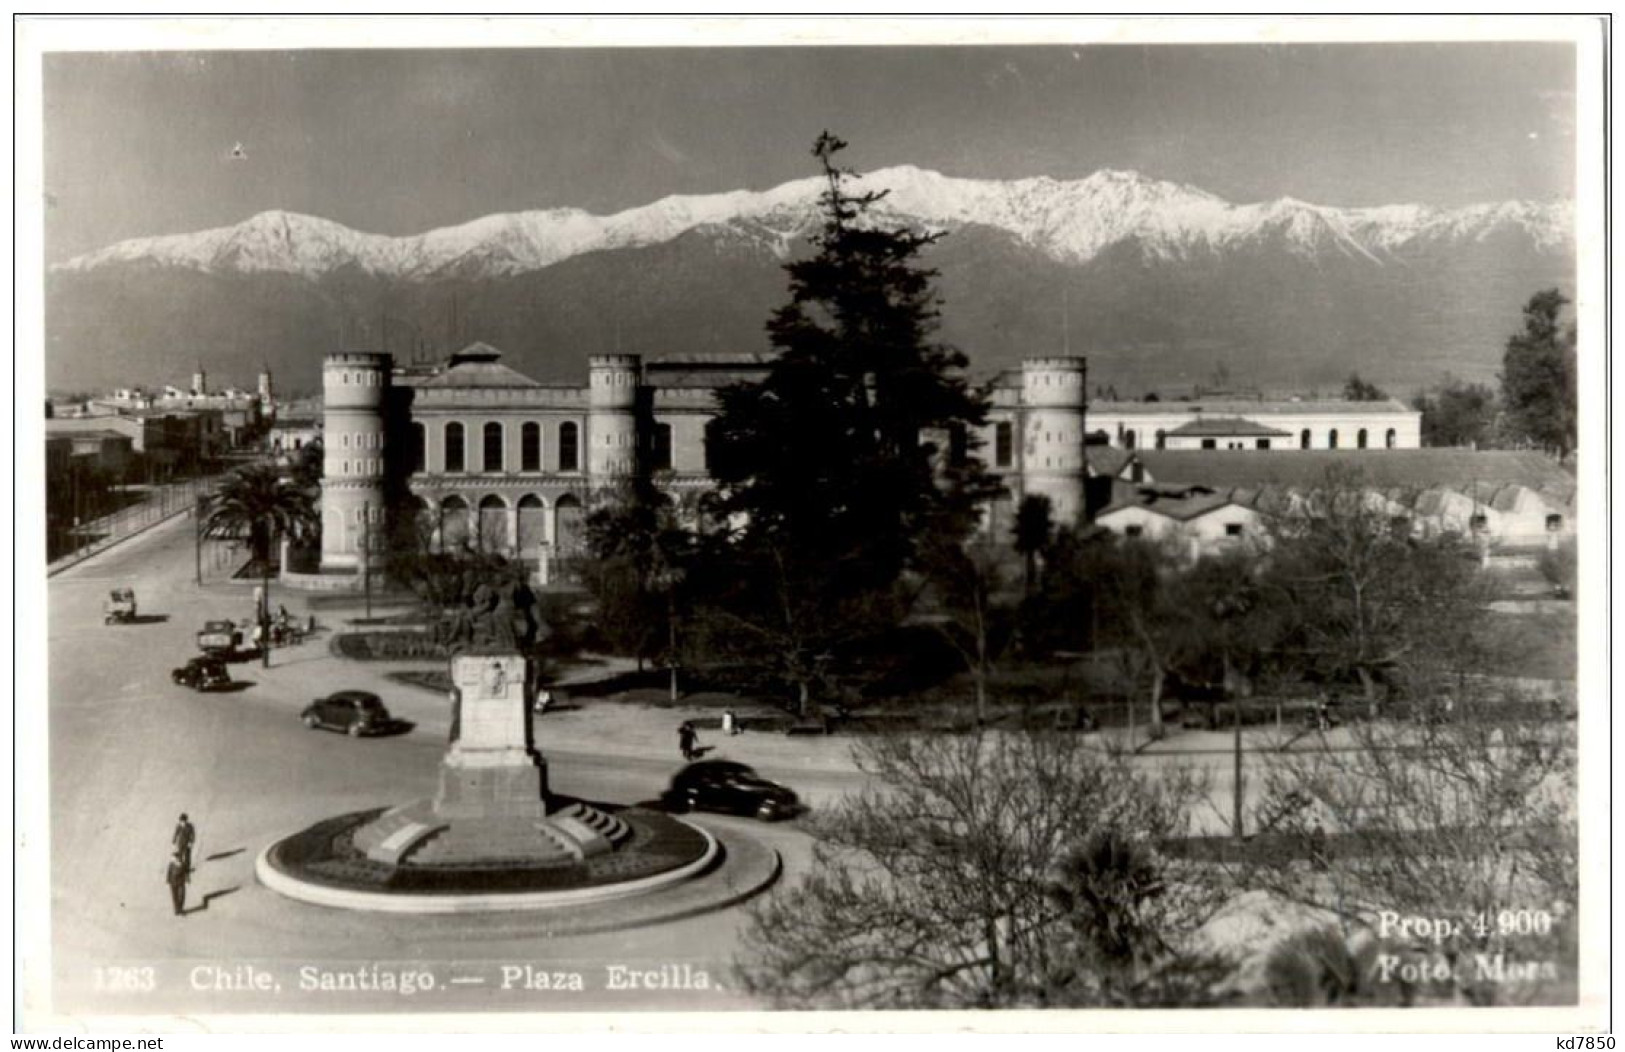 Santiago - Plaza Ercilla - Chile